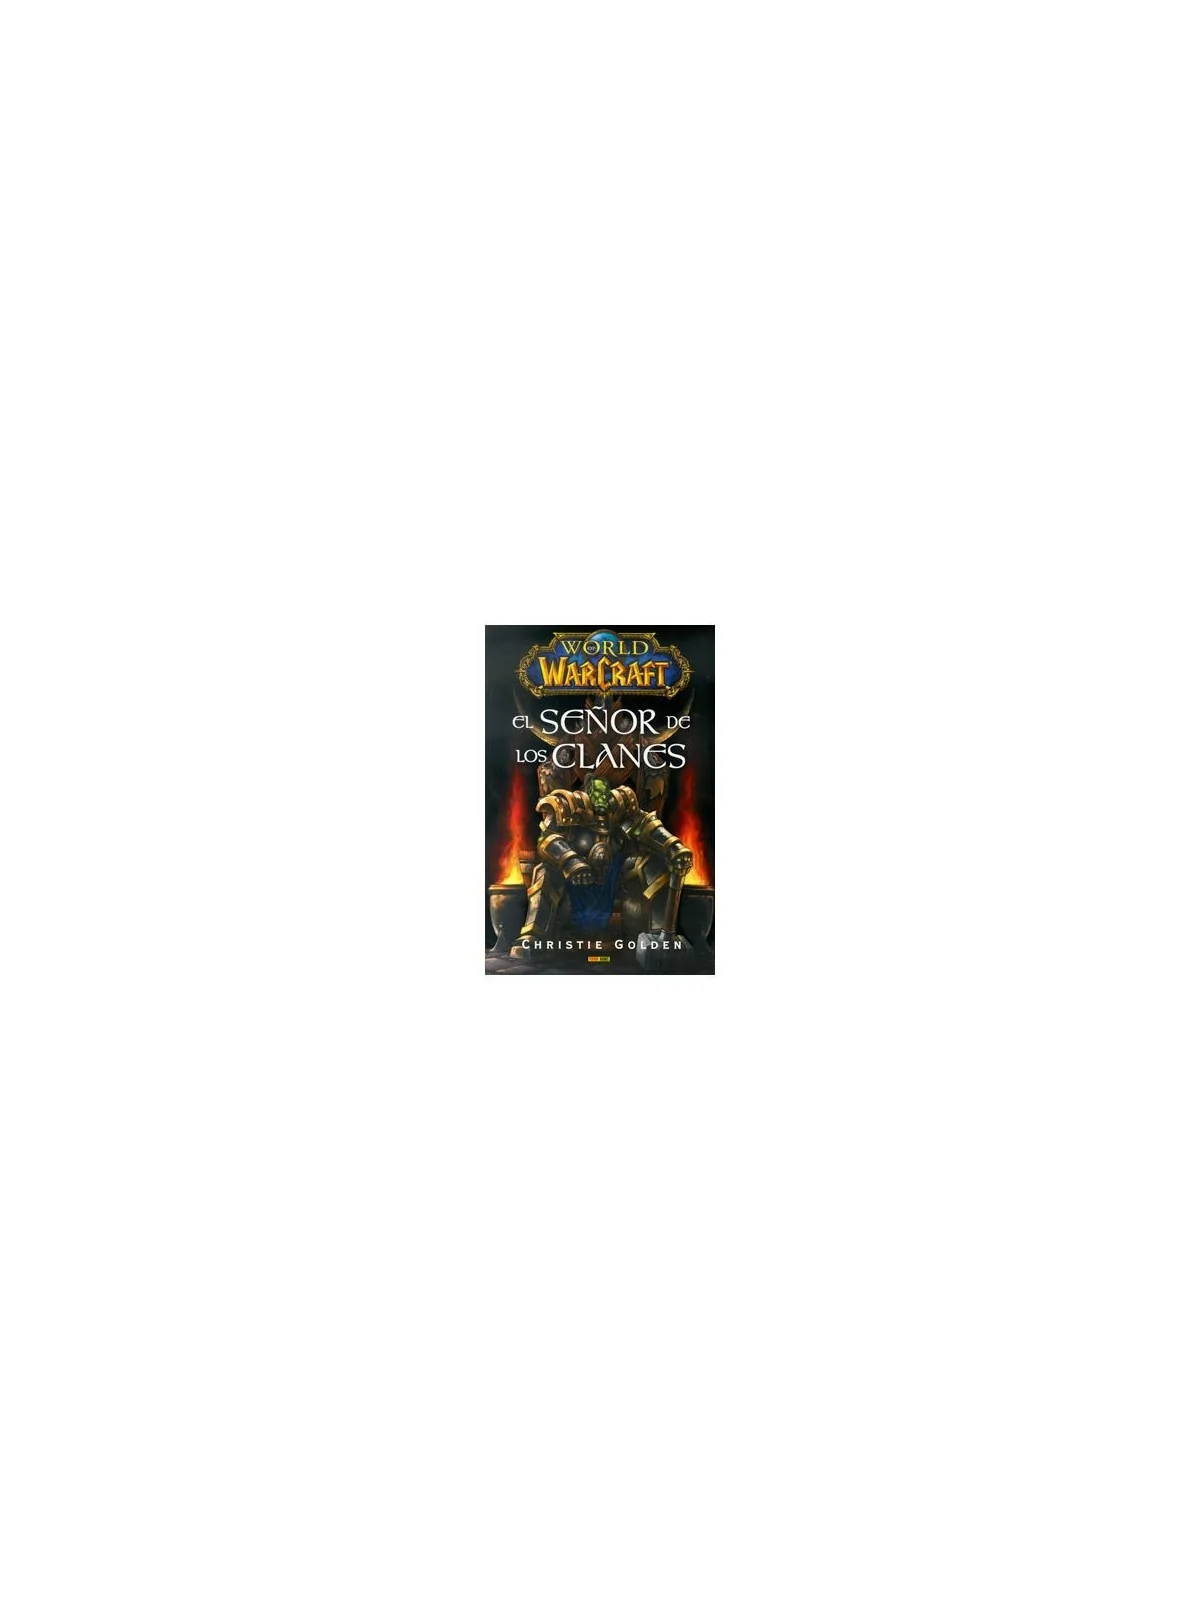 Comprar World of Warcraft: El Señor de los Clanes barato al mejor prec